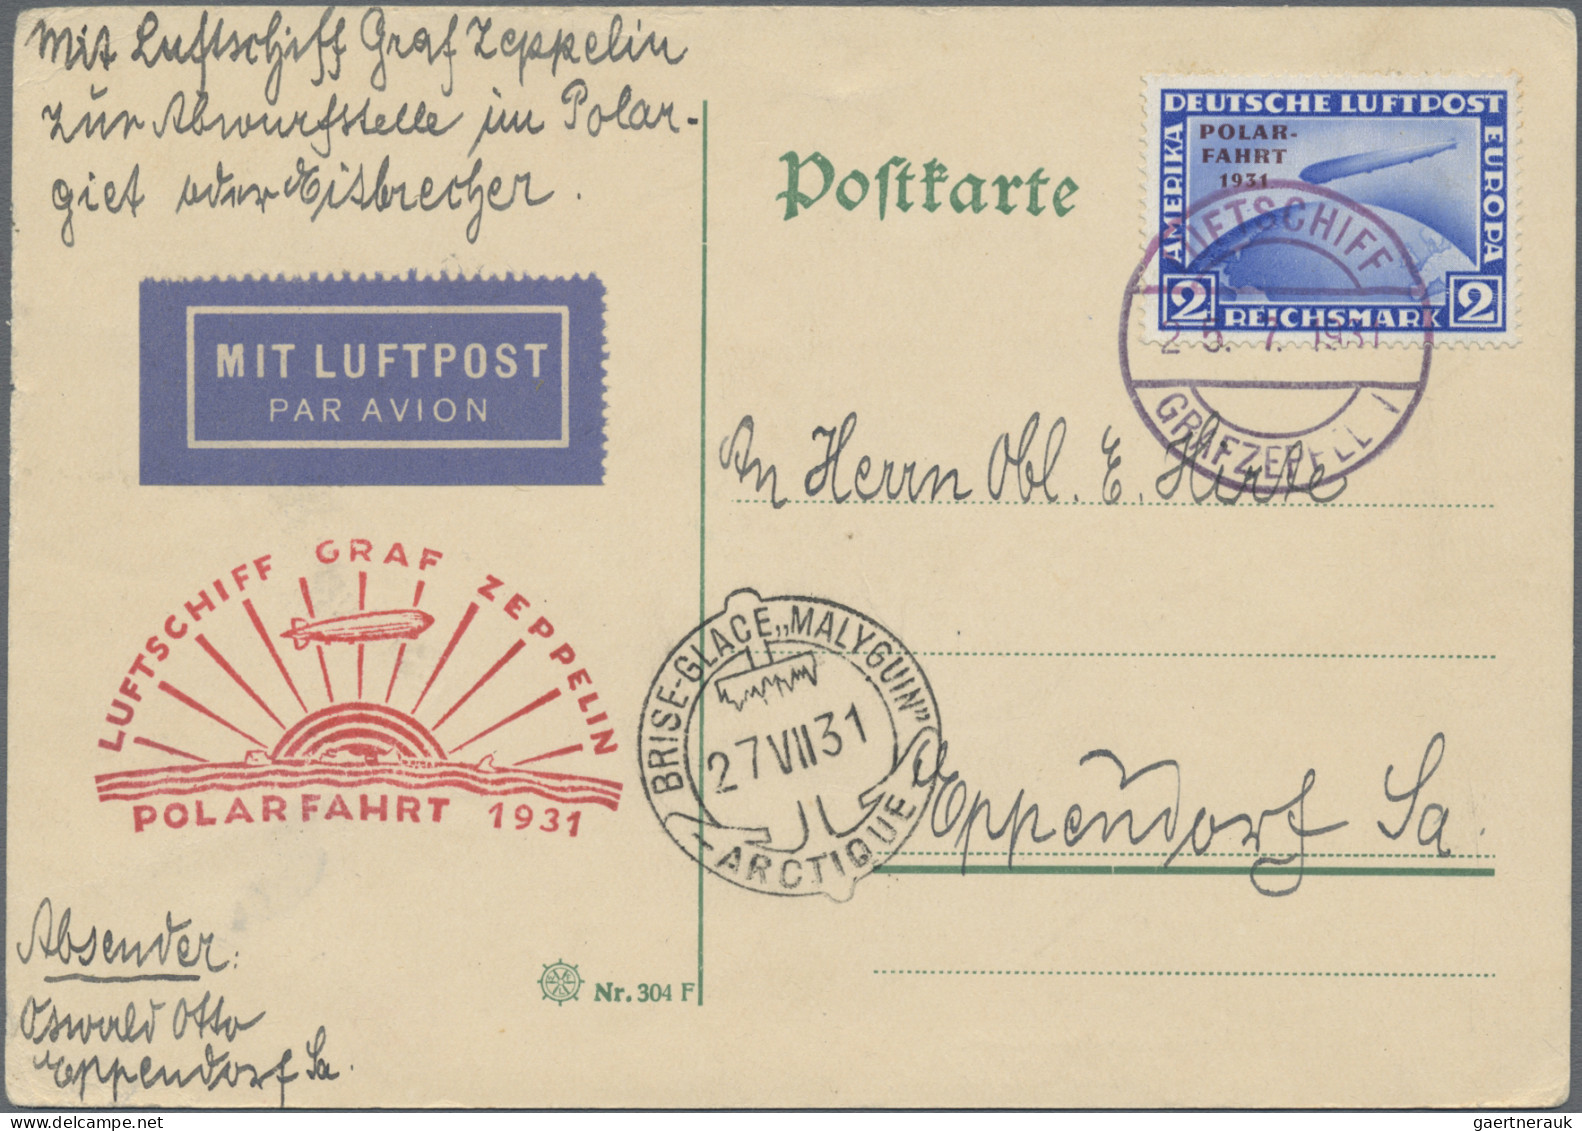 Zeppelin Mail - Germany: 1910/42 (ca.), ca. 110 Belege Zeppelin- und Flugpost, d